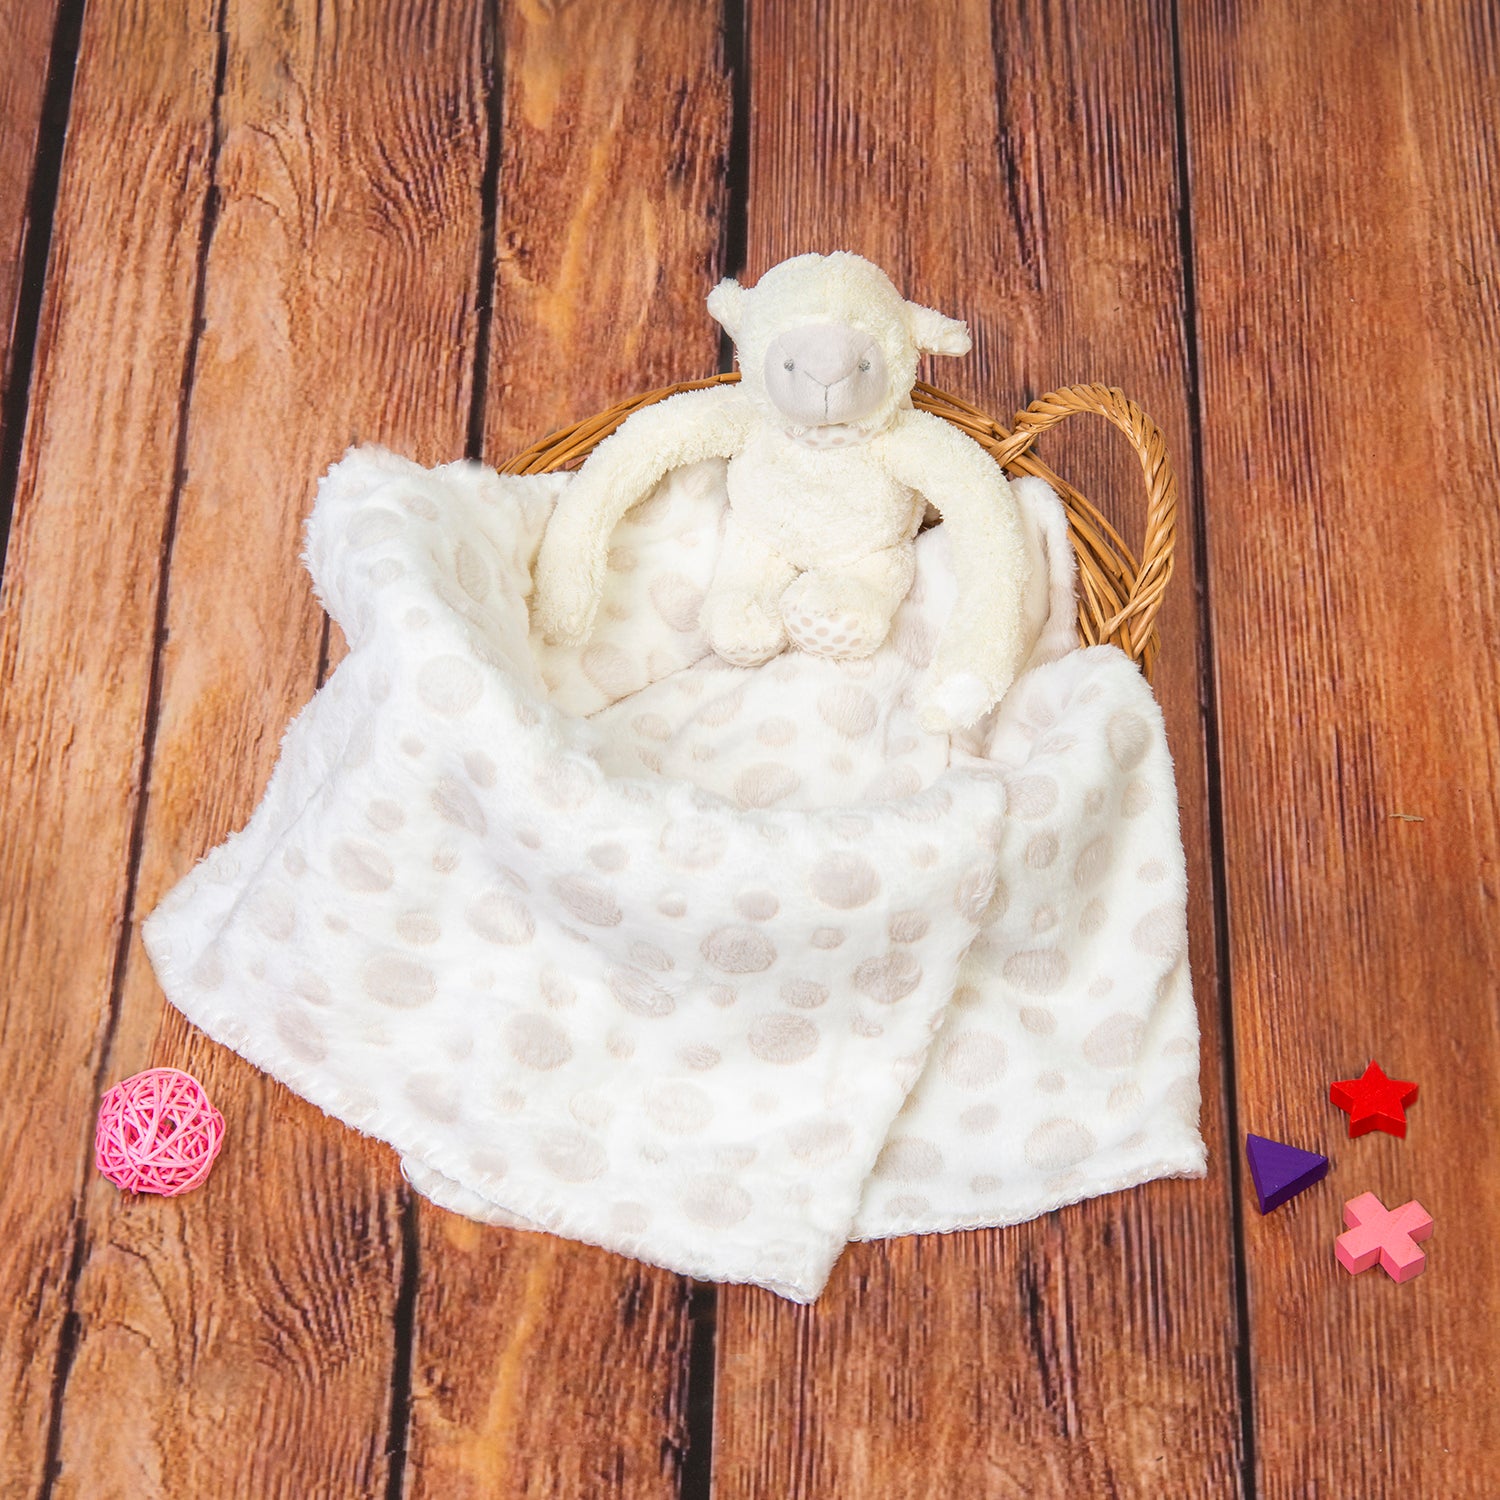 Monkey Soft Cozy Plush Toy Blanket Peach - Baby Moo